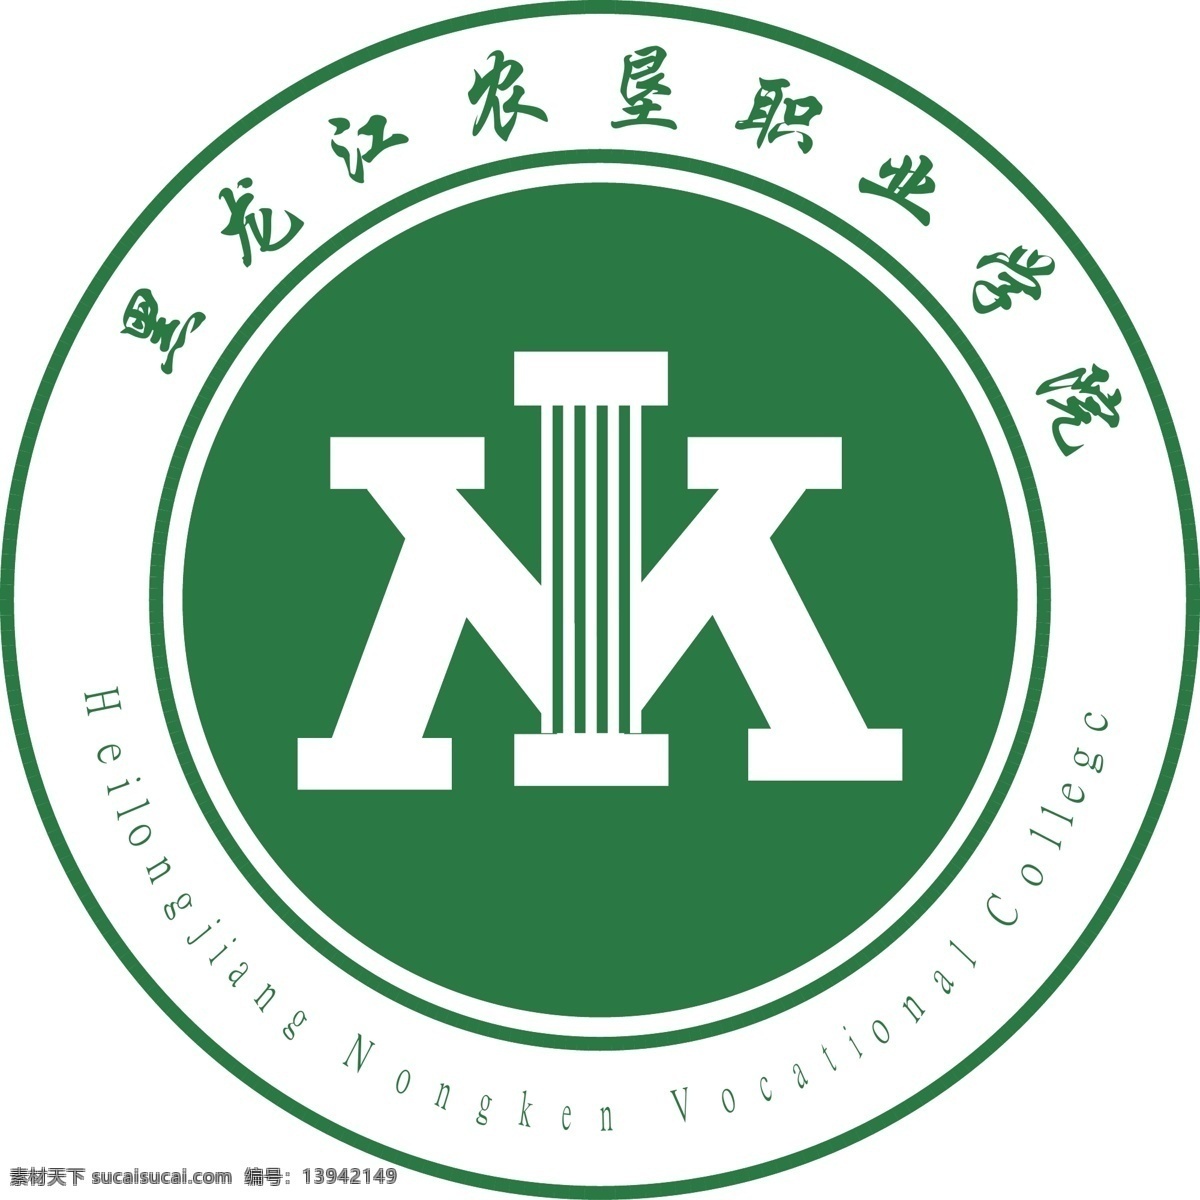 黑龙江 农垦 职业 学院 高校logo 矢量文件 绿色 简洁 可修改 白色